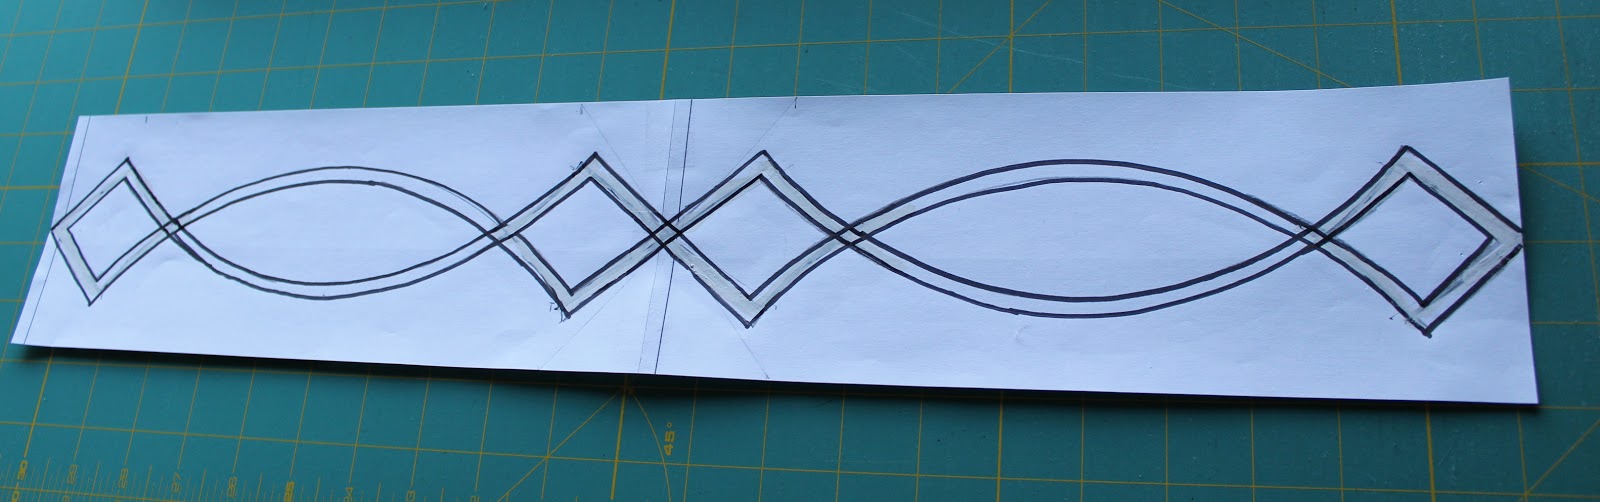 Celtic Knot Wallpaper Border I Wanted A Design